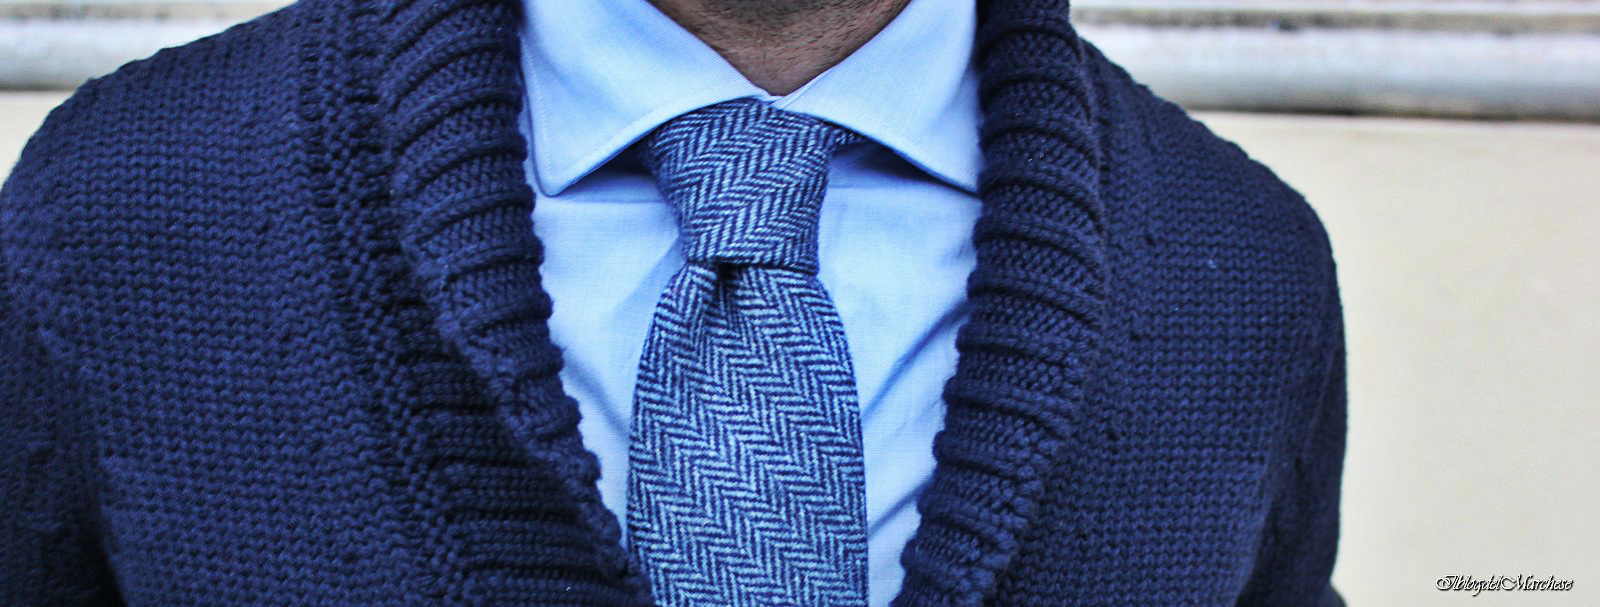 cravatte in lana spigate silvio fiorello autunno invenro 2014-2015